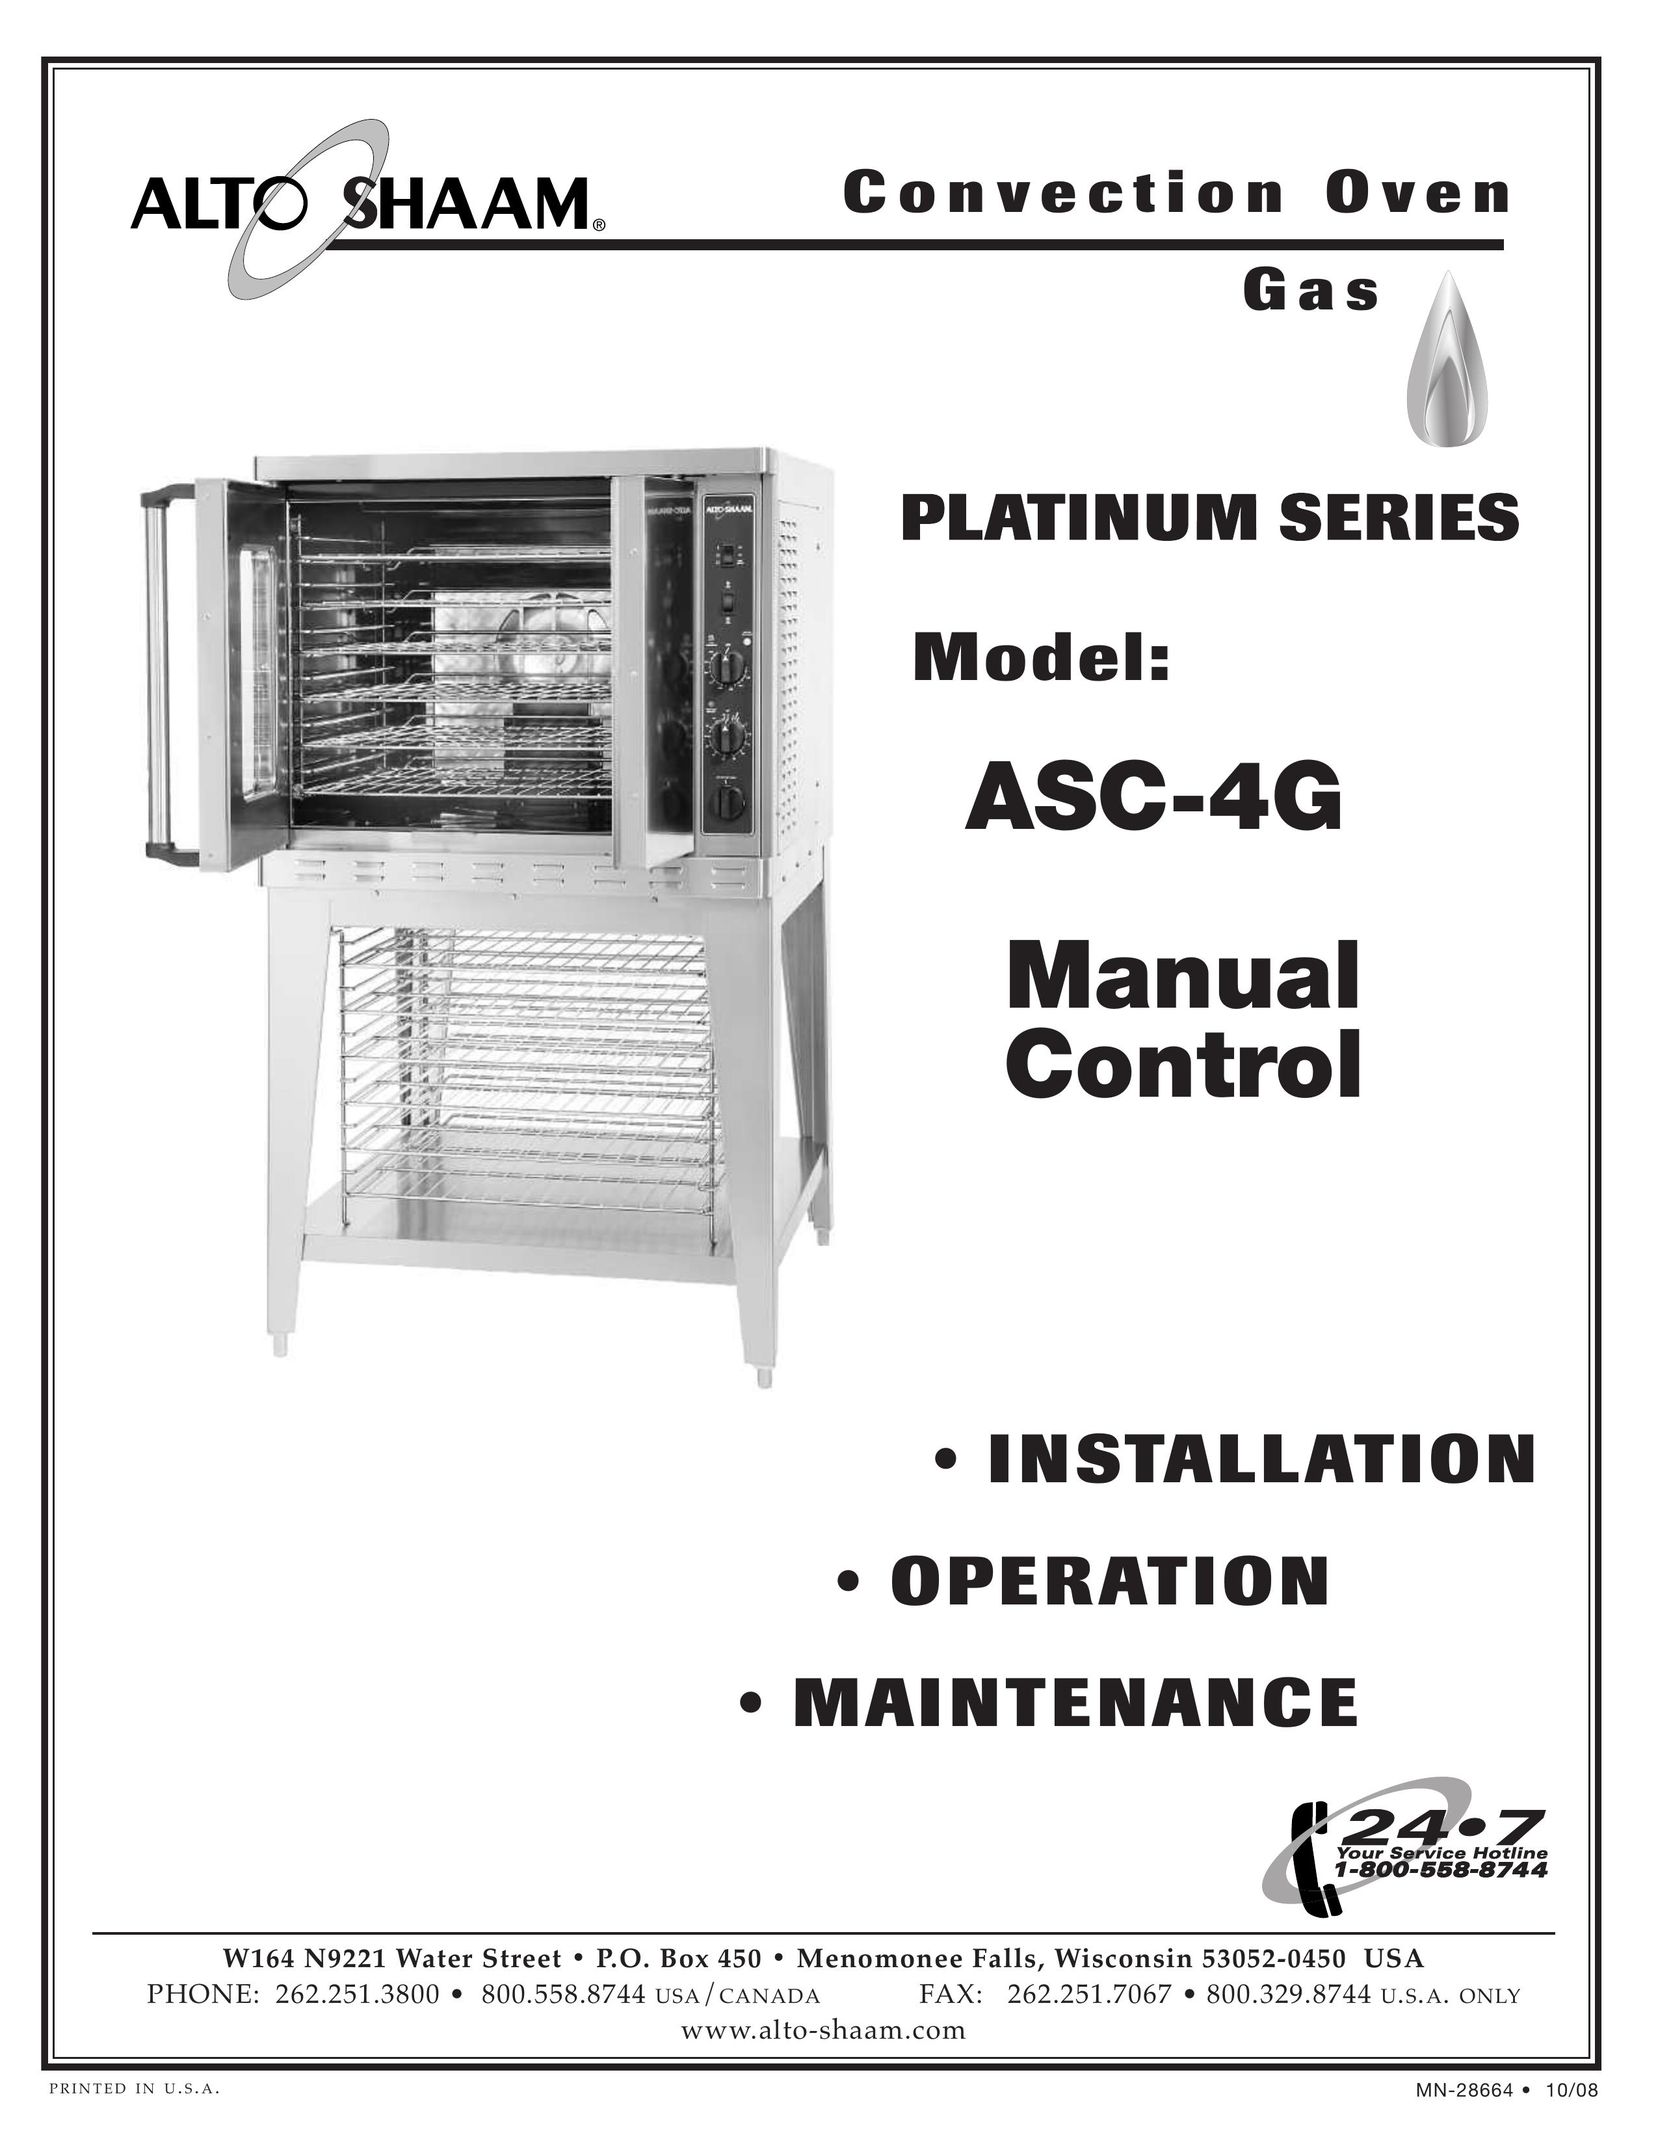 Alto-Shaam ASC-4G Convection Oven User Manual